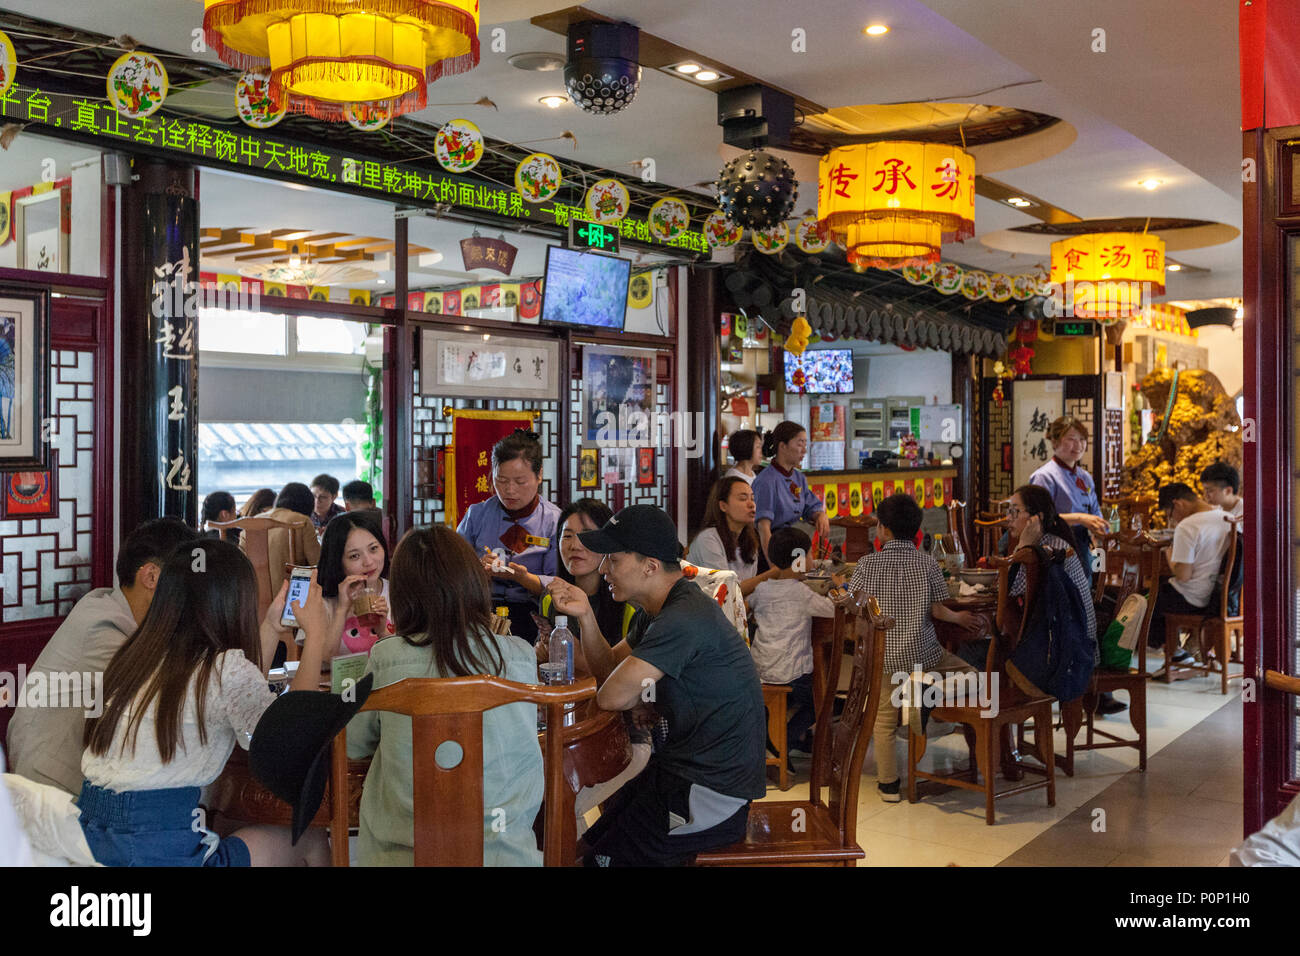 Suzhou, Jiangsu, China.  Interior of Tong De Xin Noodle Restaurant. Stock Photo